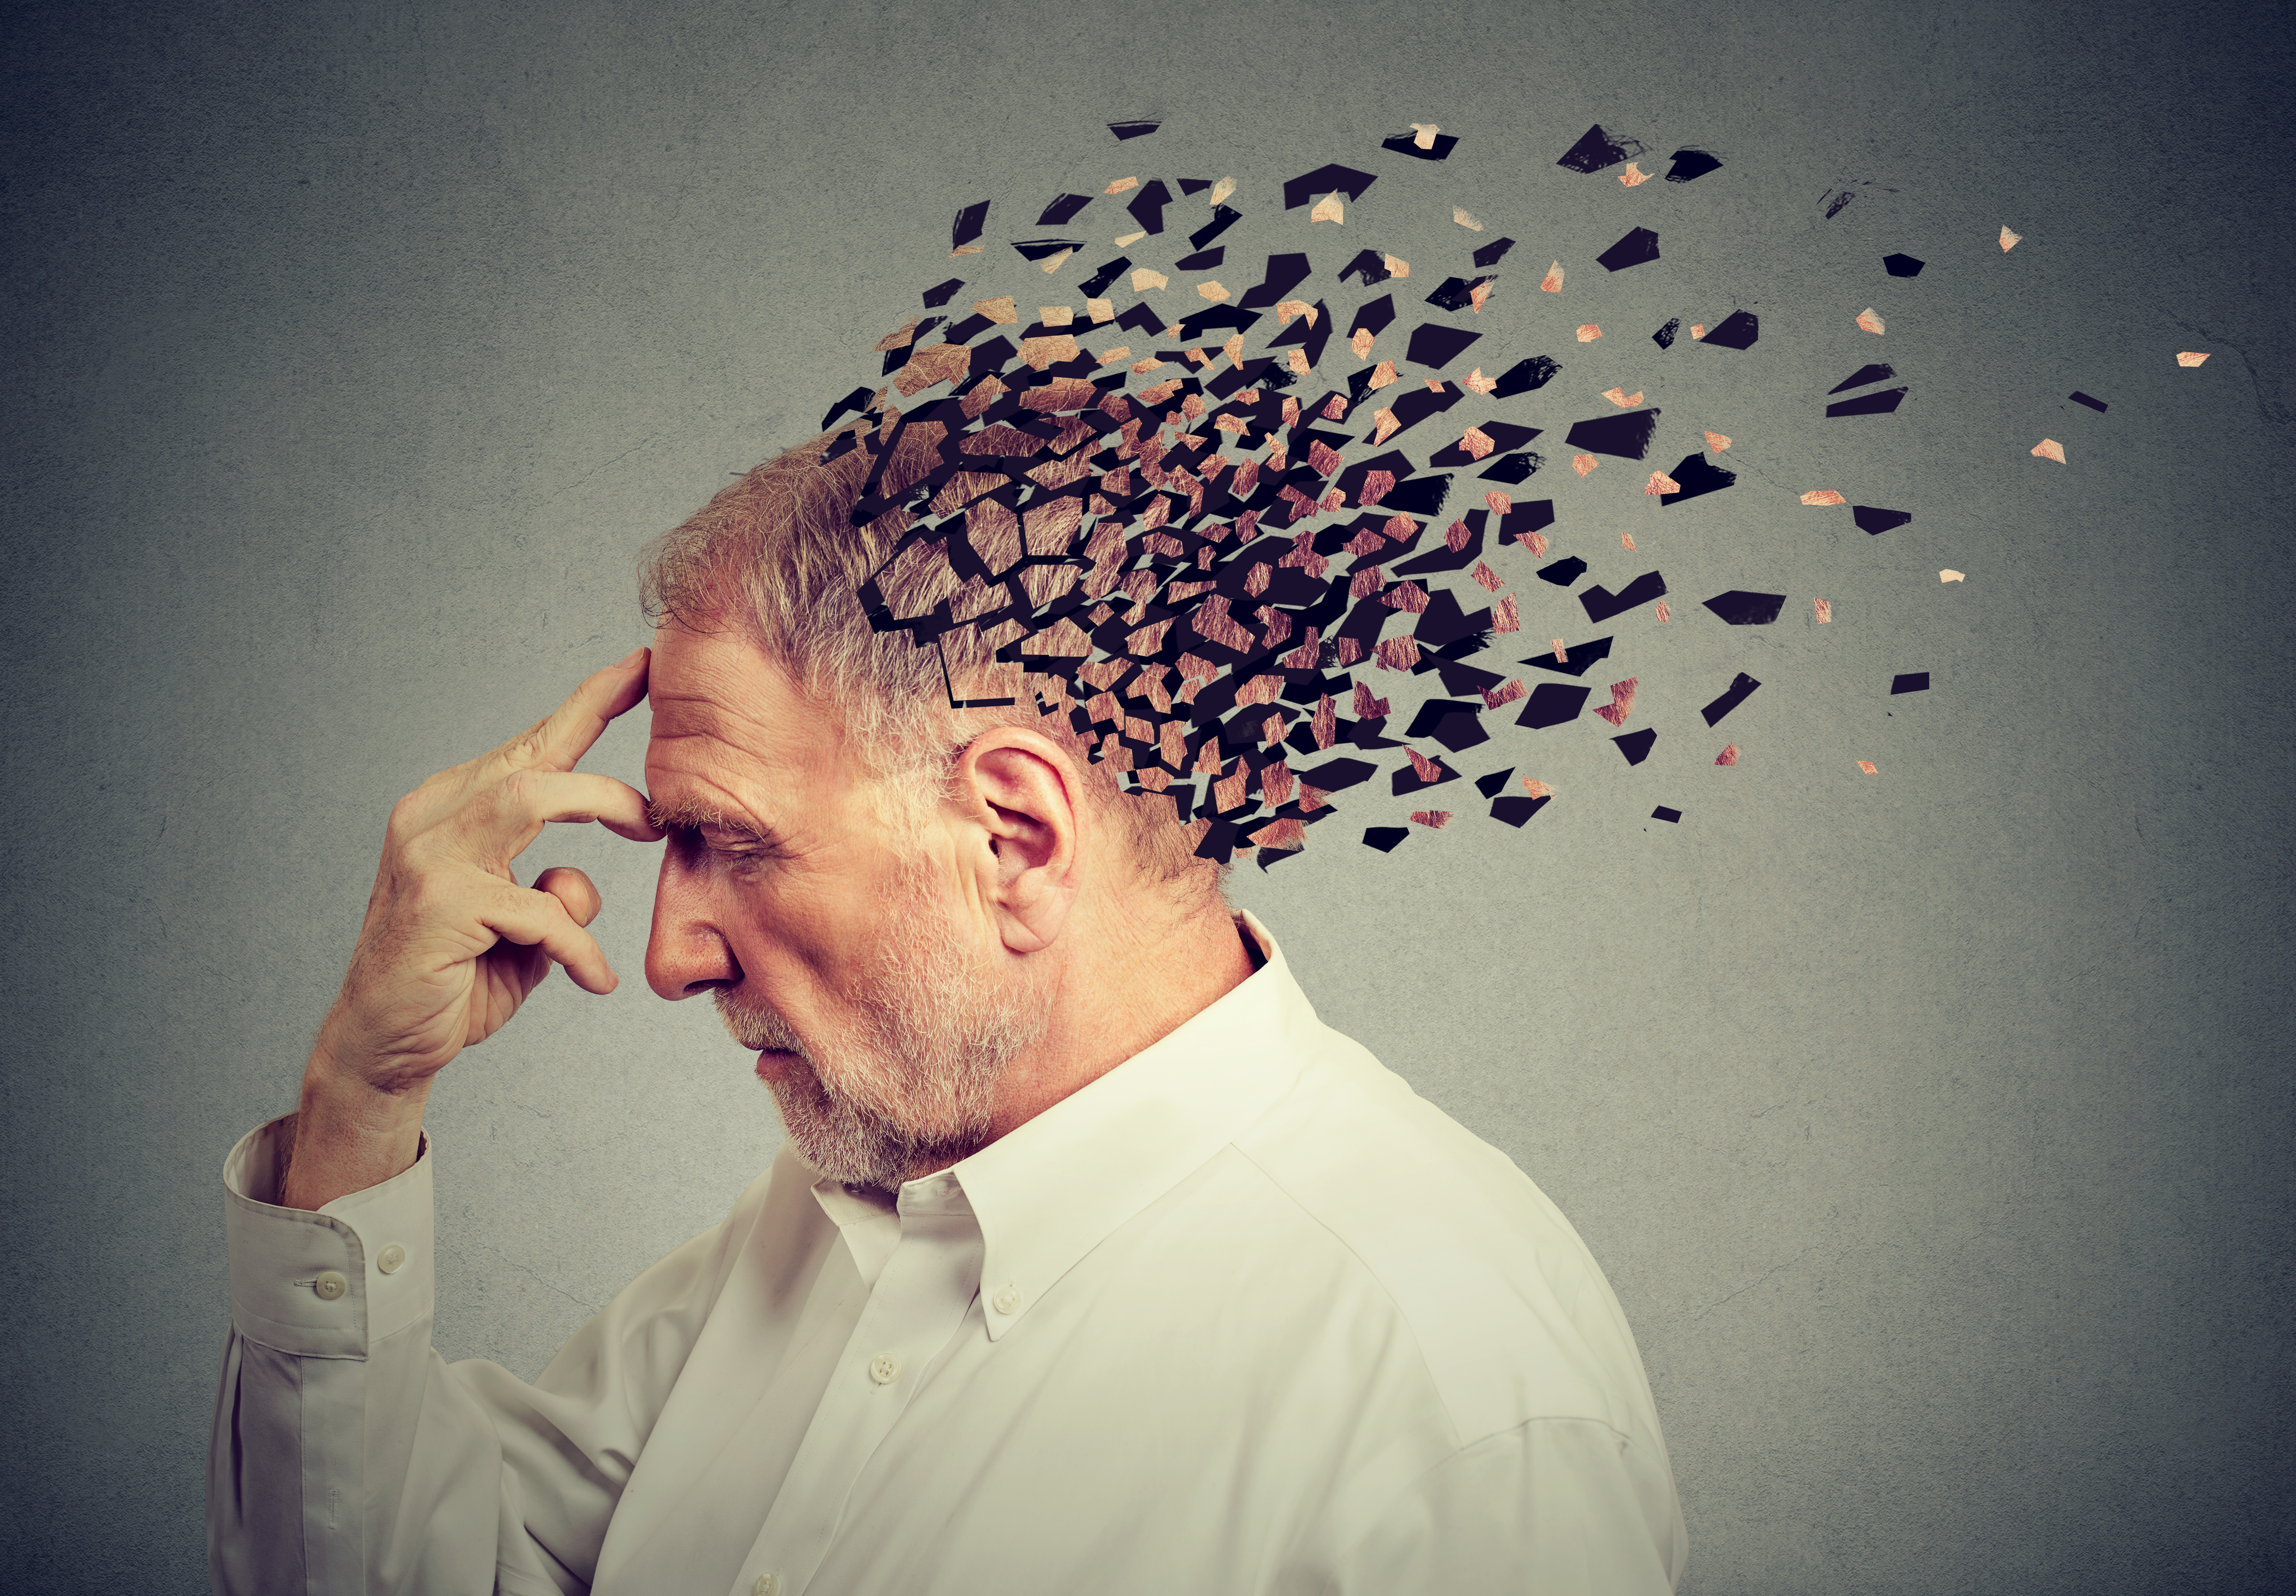 Existen unos 100 tipos de demencias con distintos síntomas (Shutterstock)